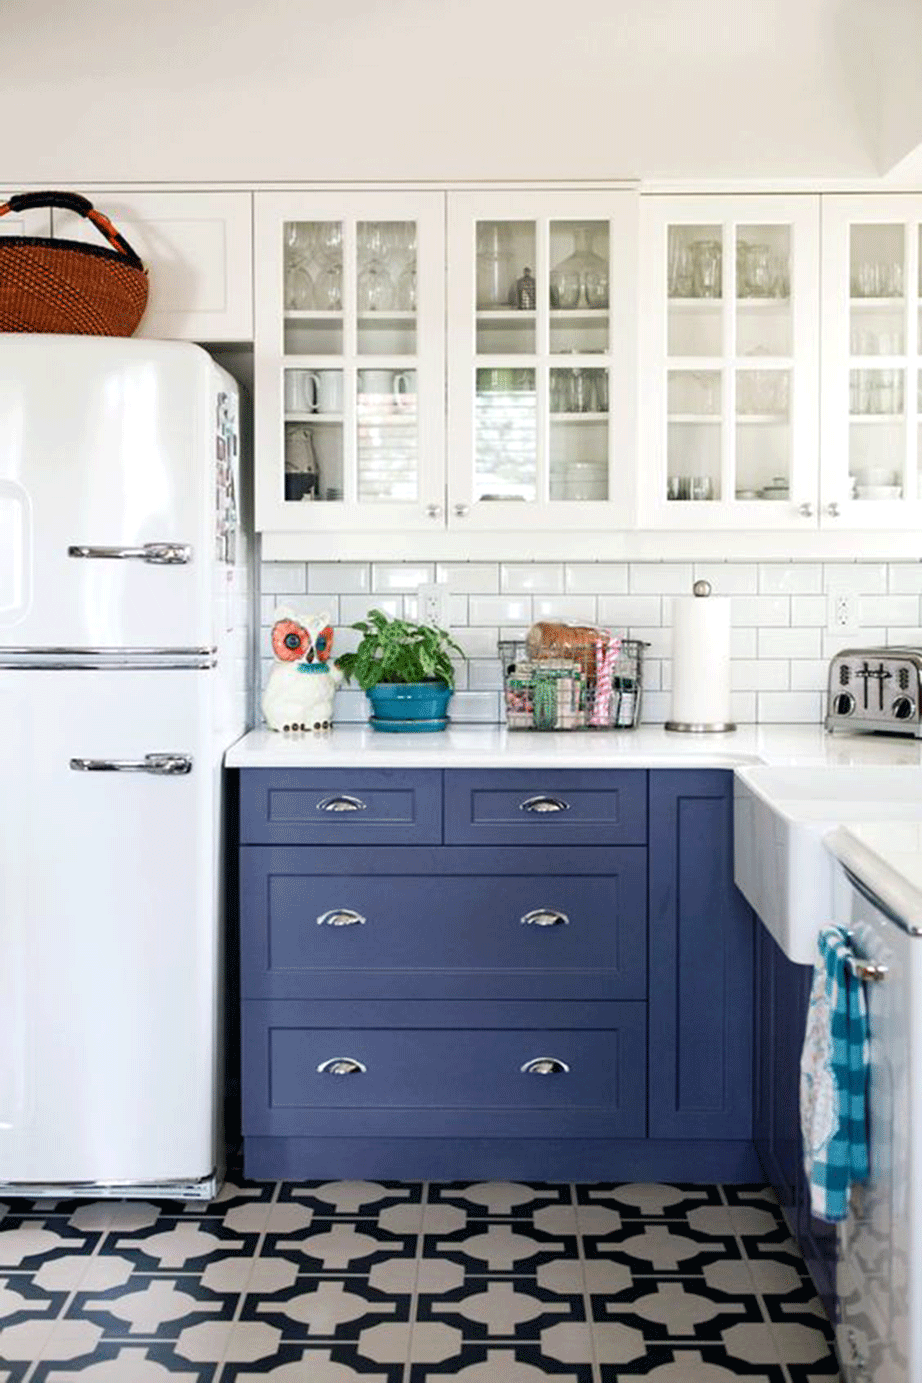 Στην περίπτωση που θέλετε το μπλε σε μεγαλύτερες δόσεις μέσα στο χώρο της κουζίνας προσθέστε στο εσωτερικό των ντουλαπιών, αν αυτά έχουν πορτάκια με γυαλί όπως της εικόνας, ταπετσαρία με σχήματα σε μπλε αποχρώσεις. Μια ριγέ μπλε - λευκό θα ήταν μια εξαιρετική επιλογή. 